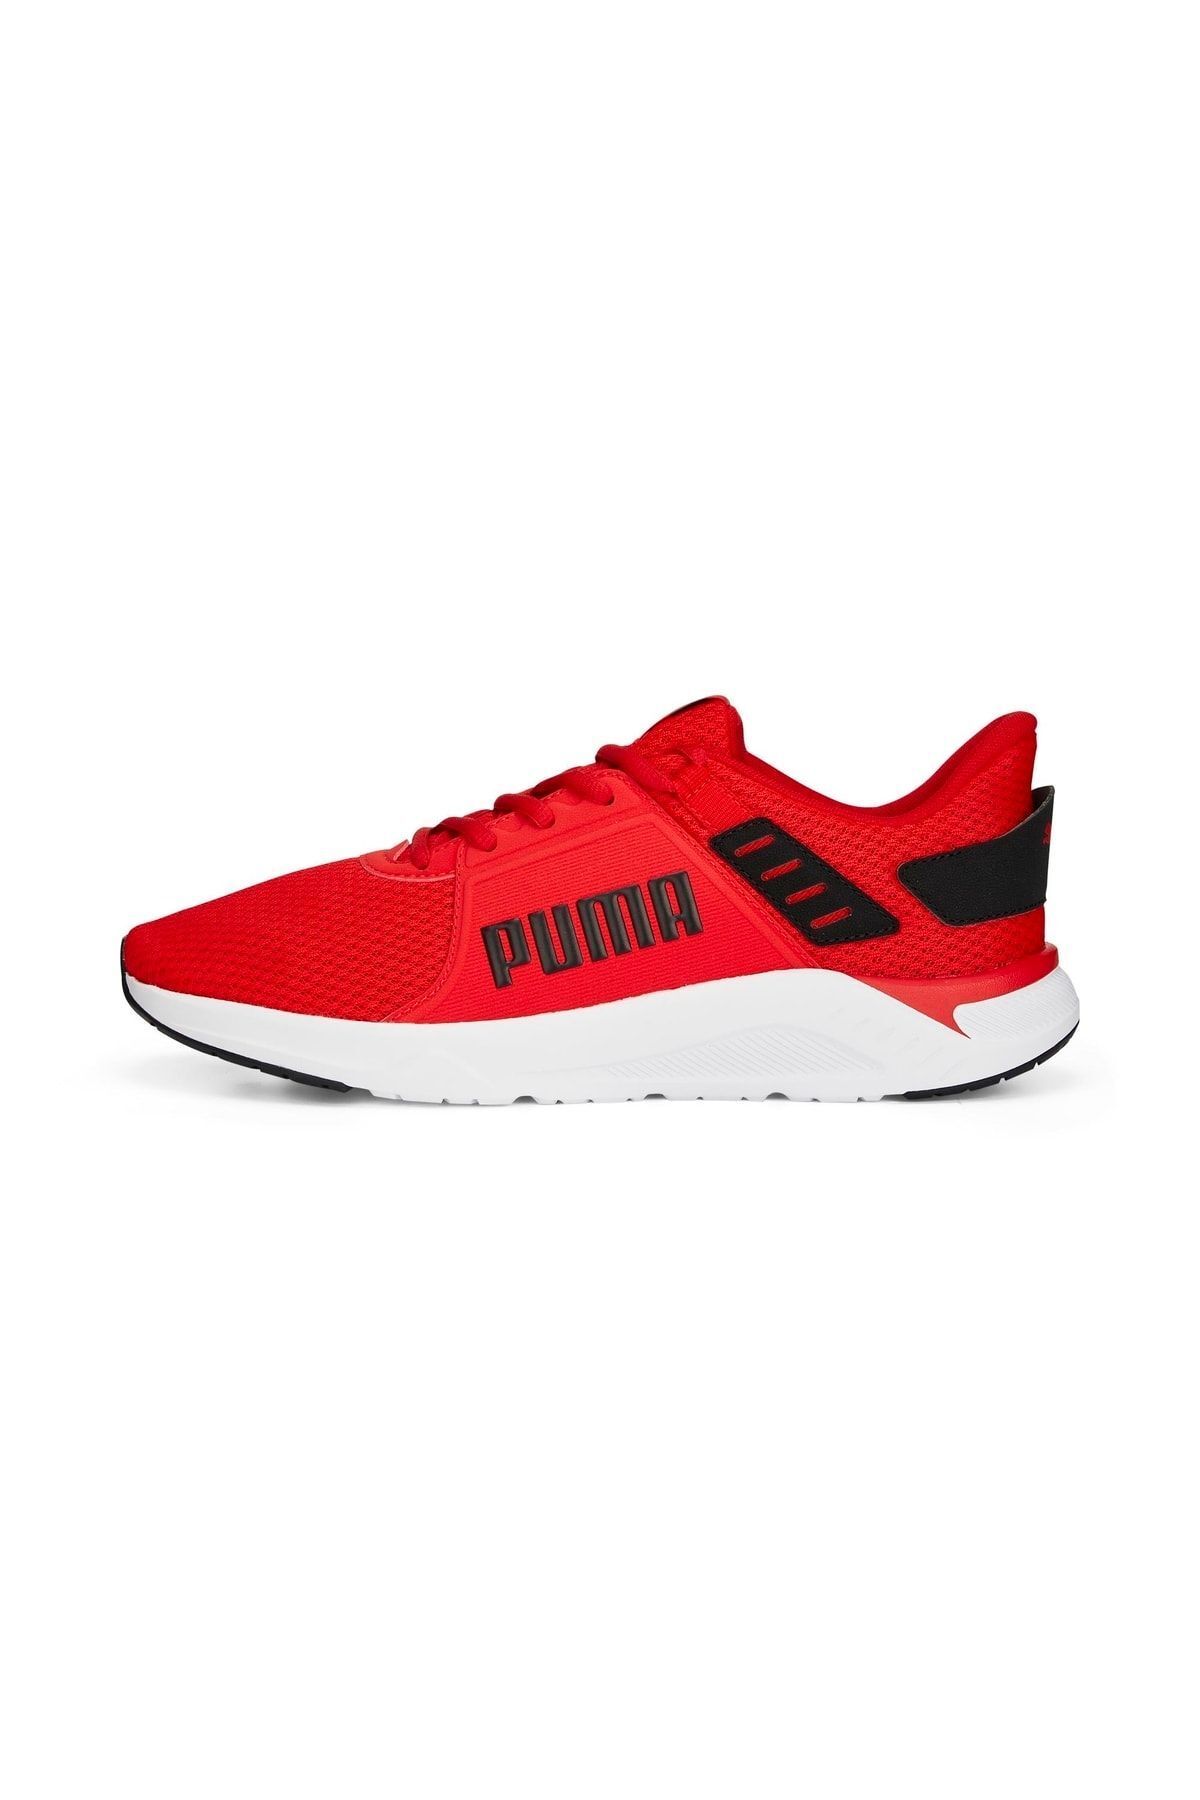 Puma Ftr Connect Kırmızı Siyah Erkek Spor Ayakkabı 377729-04